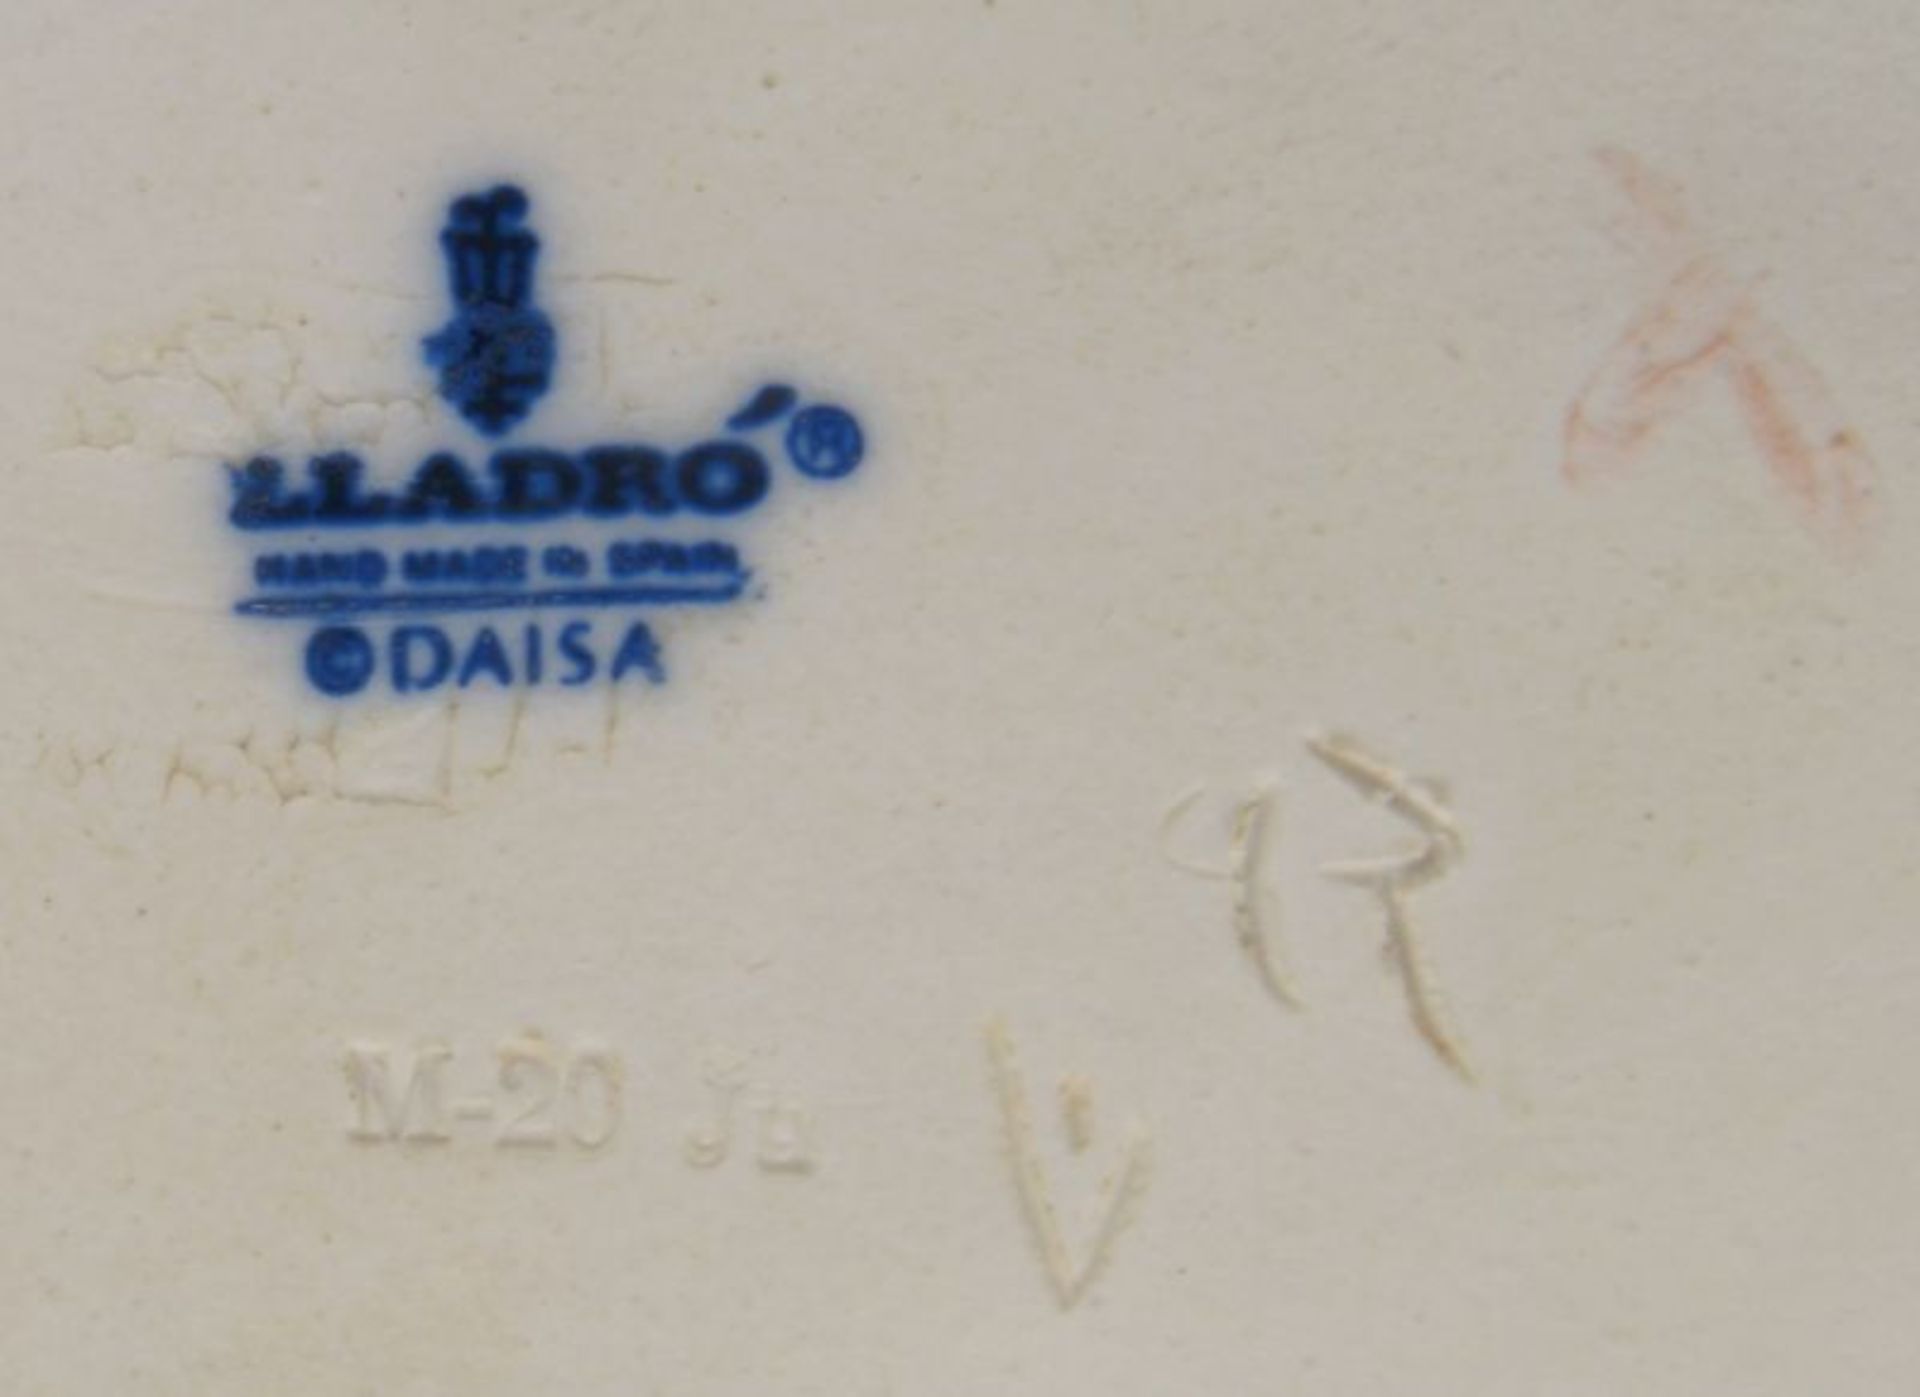 Lladro/Spanien, 2 Porzellanfiguren, pastellfarben staffiert, gemarkt: 1x 'Junge Frau mit Ziegen und - Bild 2 aus 2